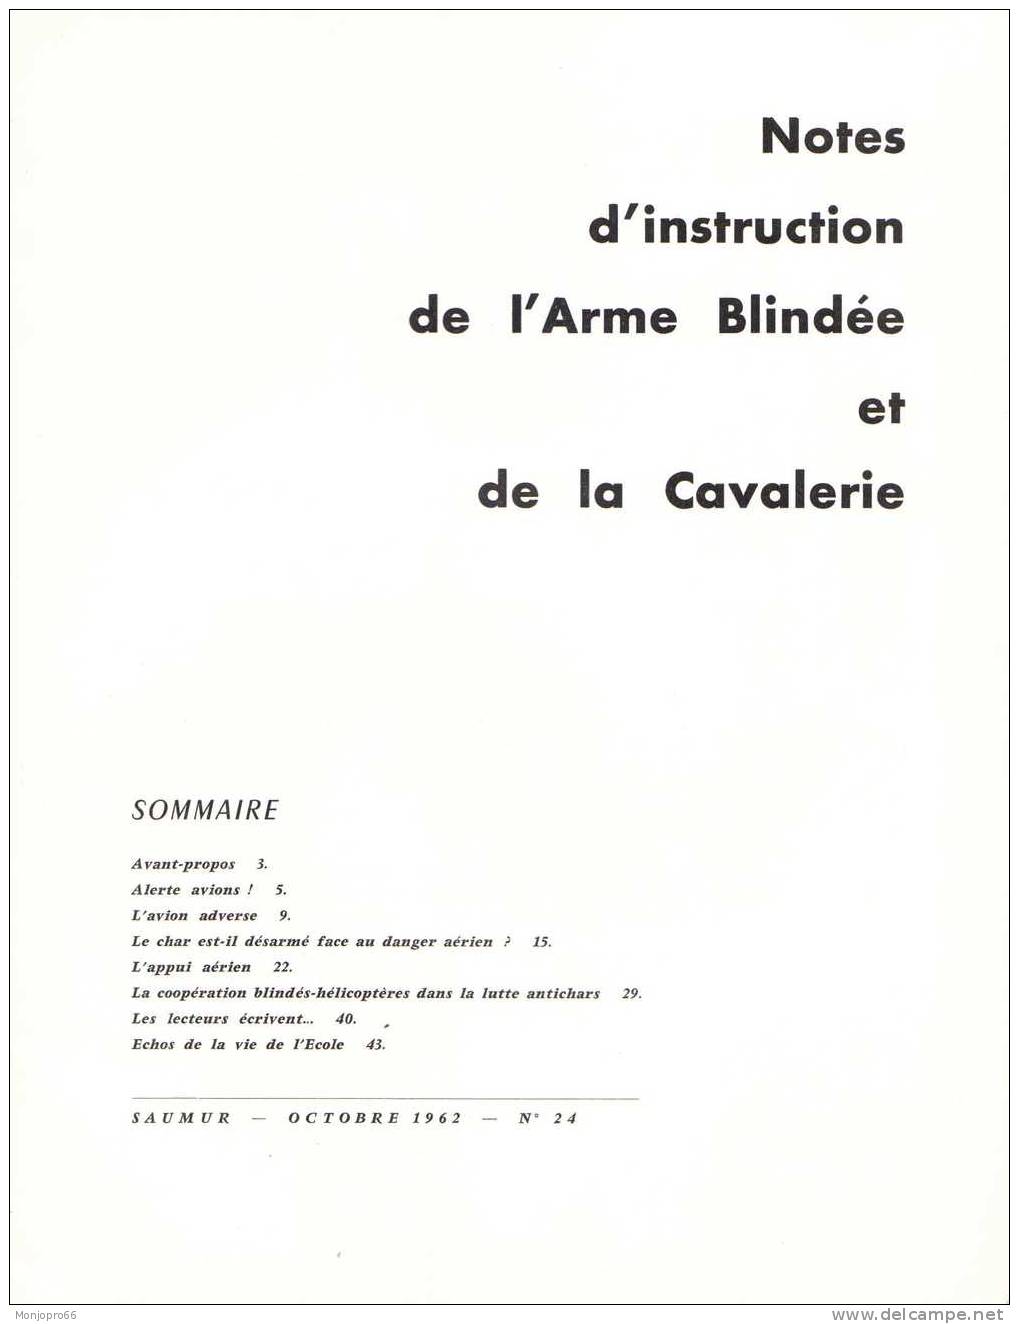 Bulletin De Notes D’instruction De L’armée Blindée Et De La Cavalerie N°24 D’Octobre 1962 - Frans